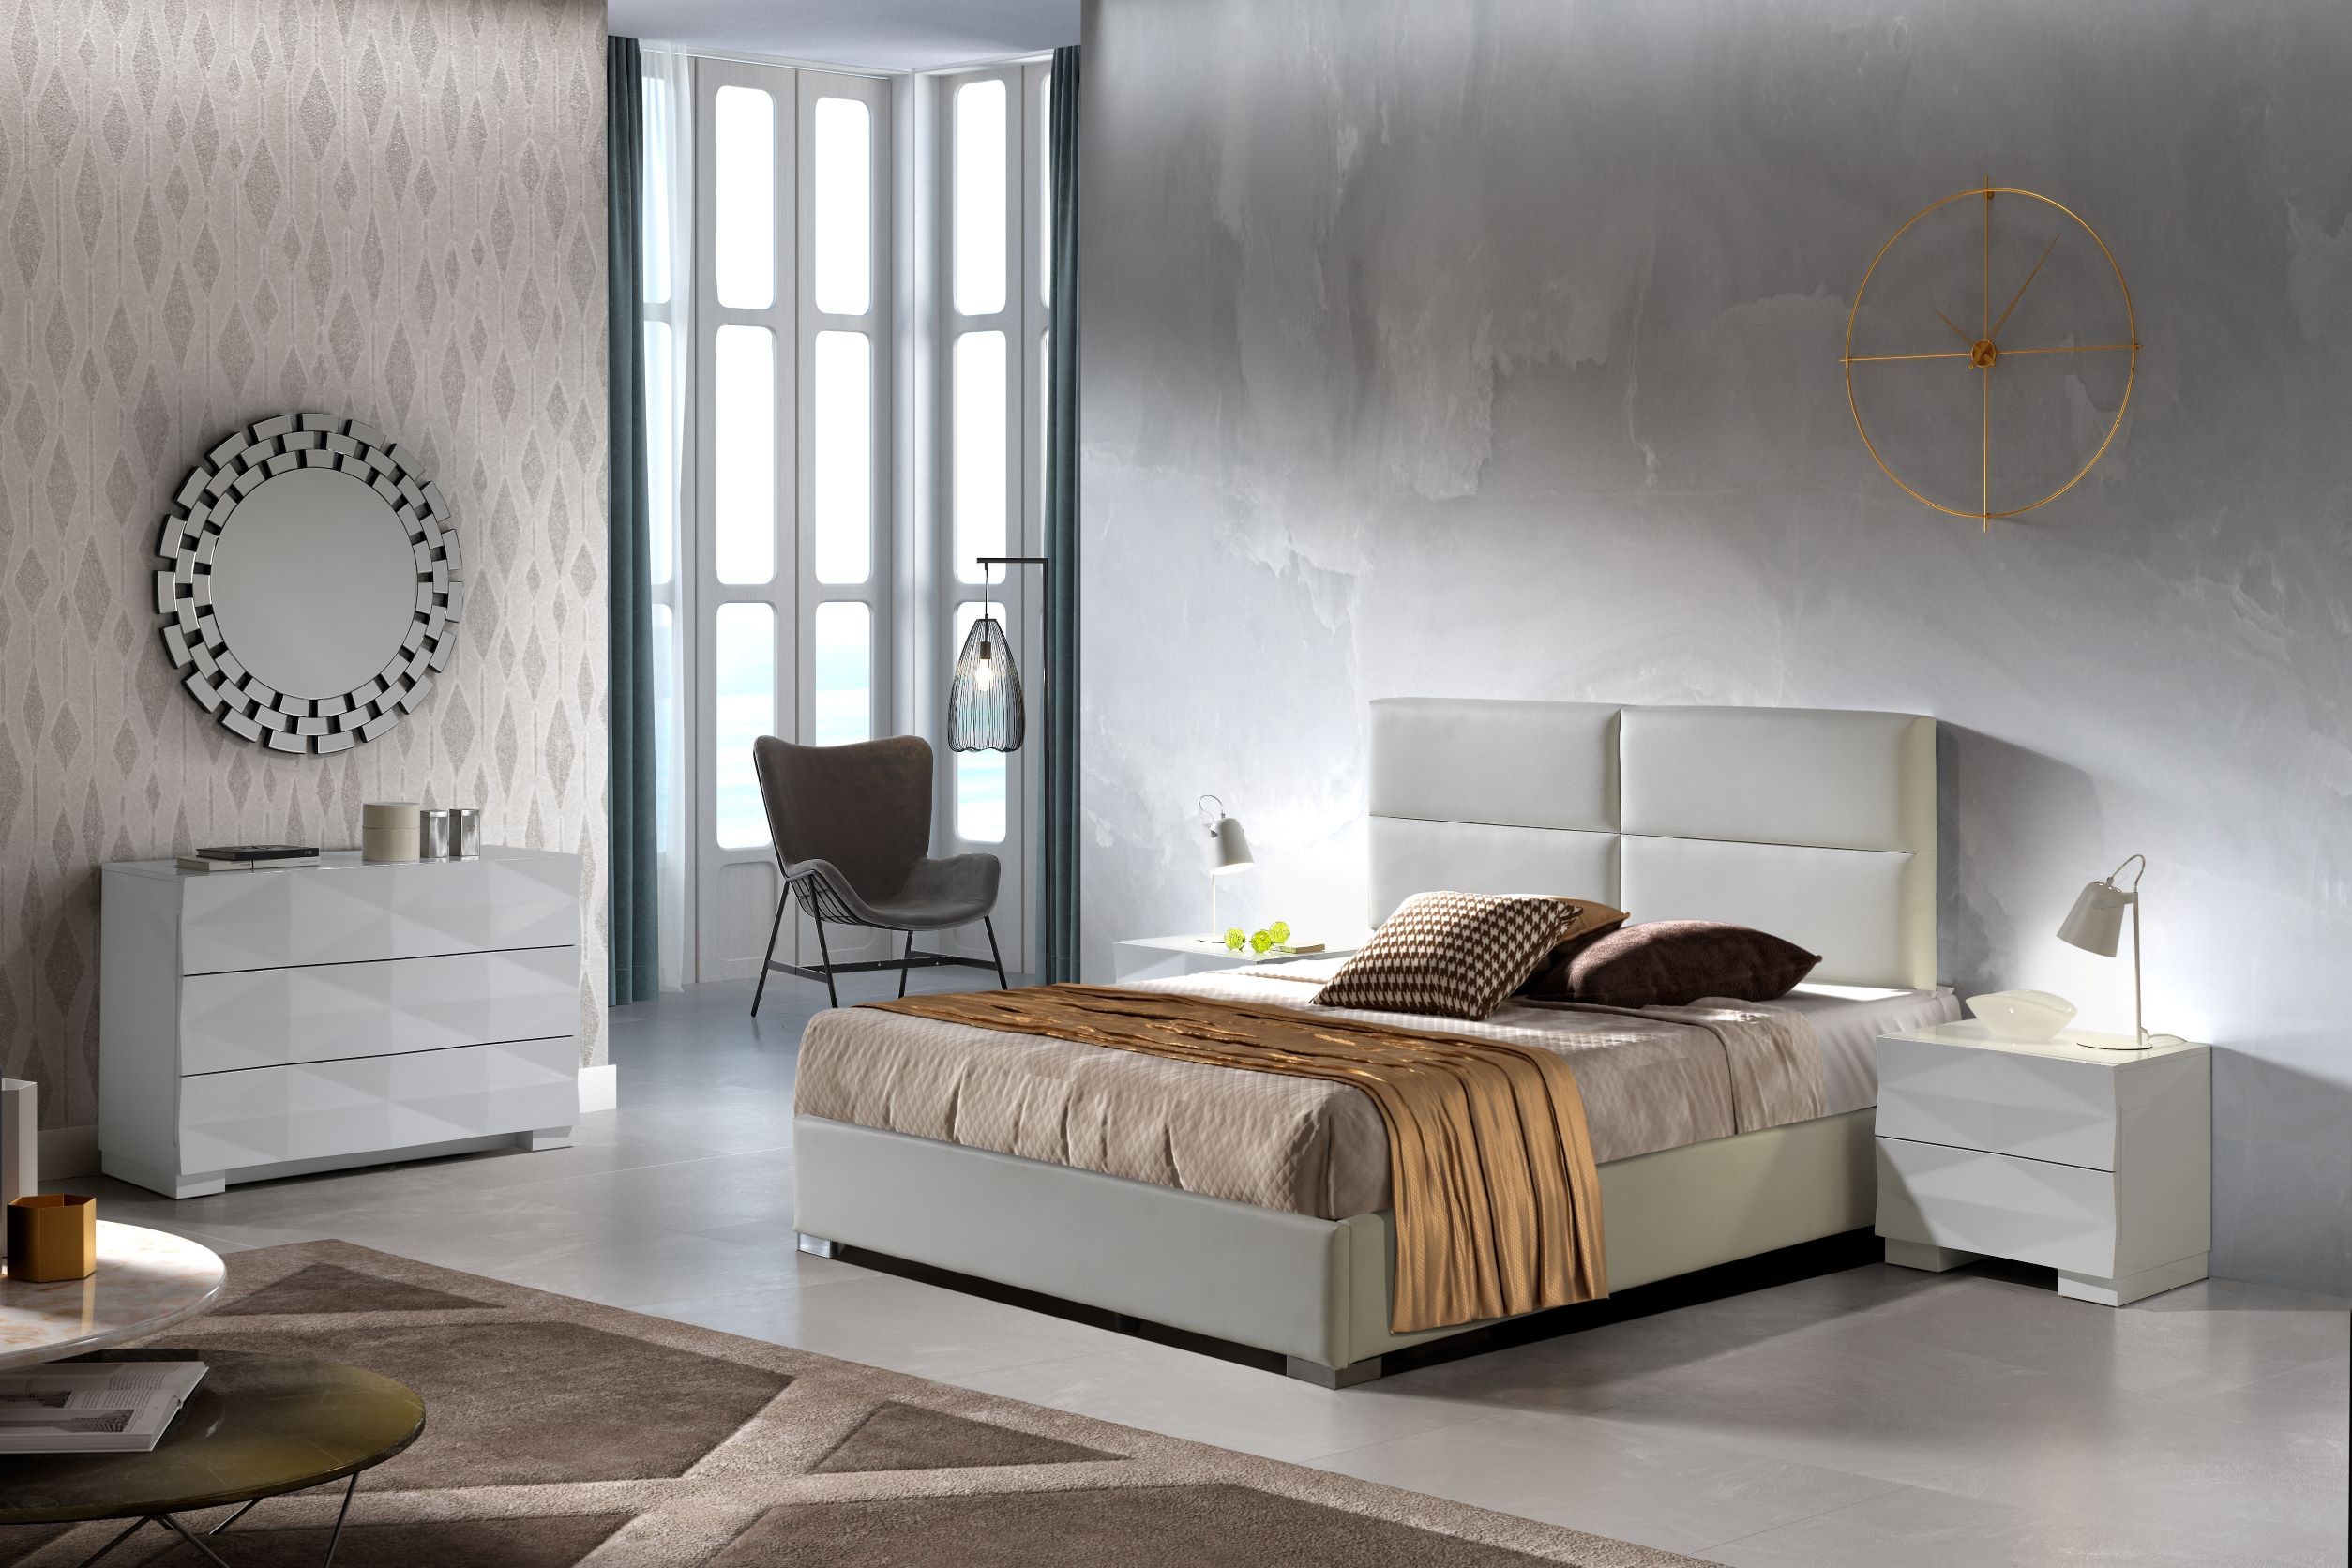 Estila Moderná luxusná manželská posteľ Sara s čalúnením z ekokože a s úložným priestorom 140-180cm